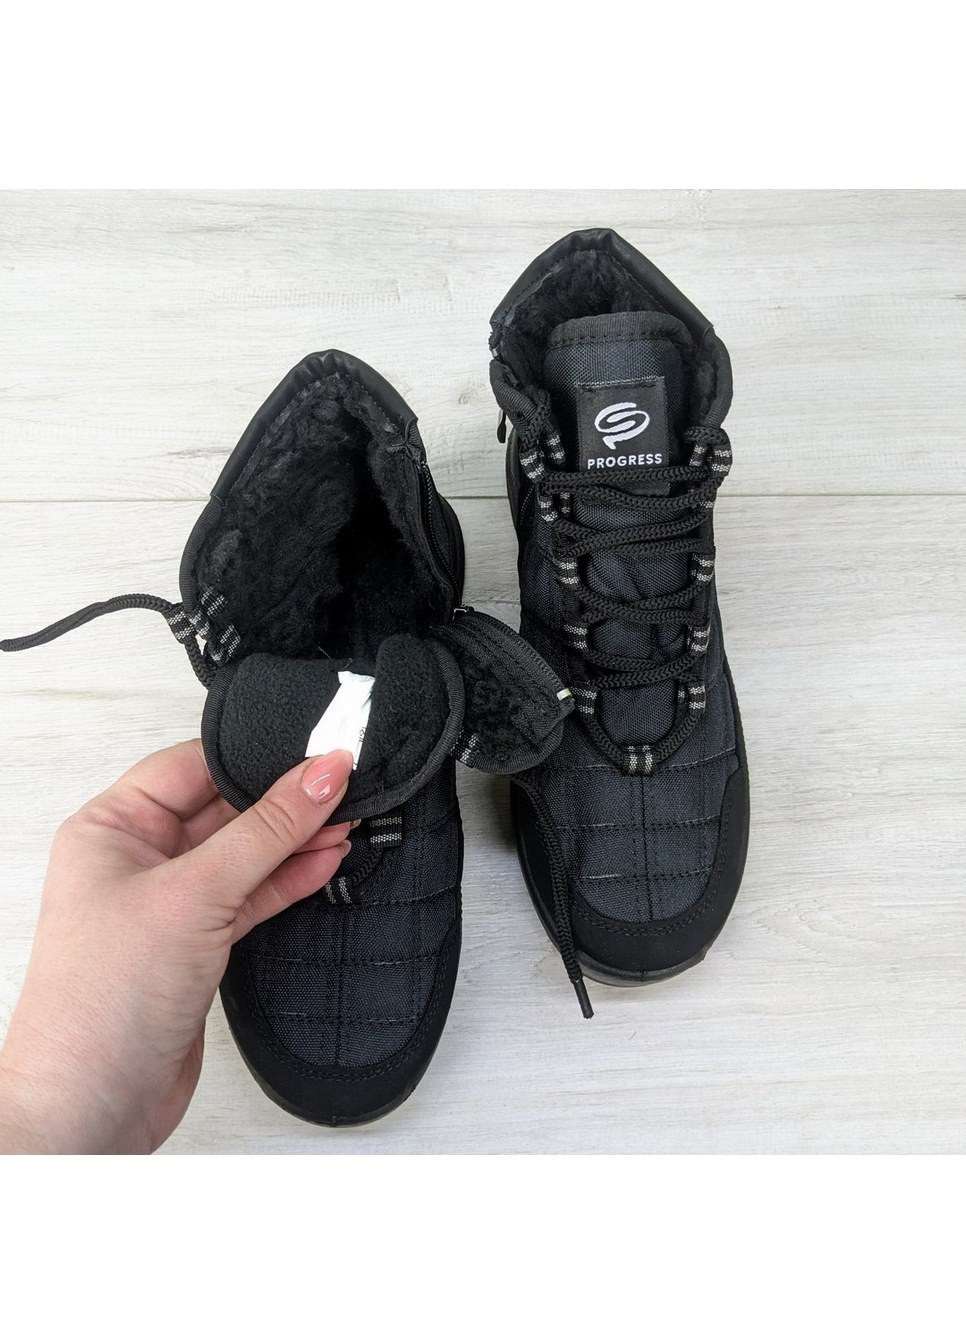 Черные повседневные зимние ботинки зимние для мальчика подростковые Progress